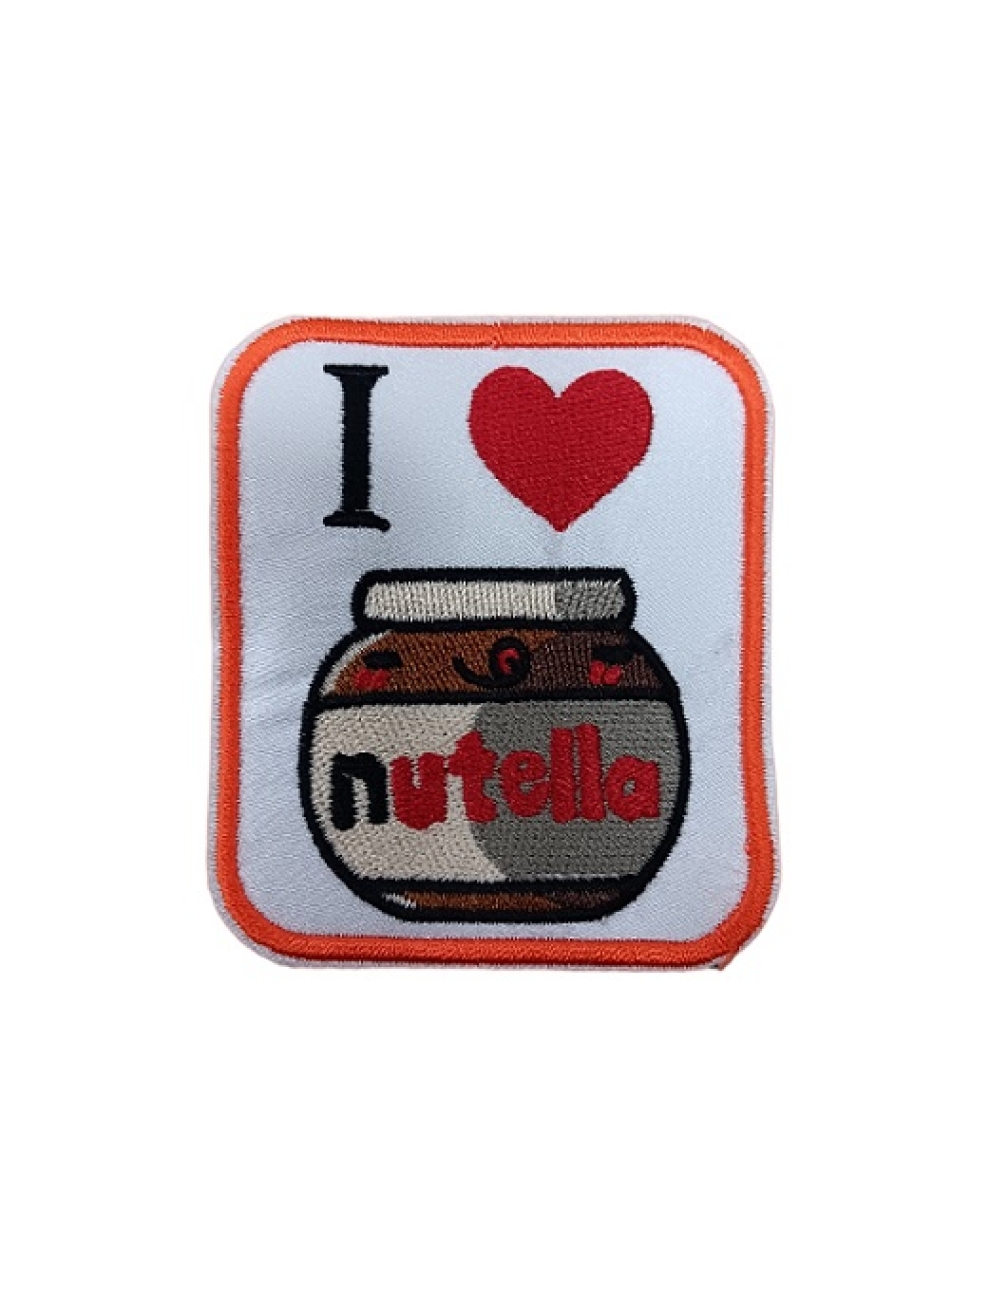 I love Nutella